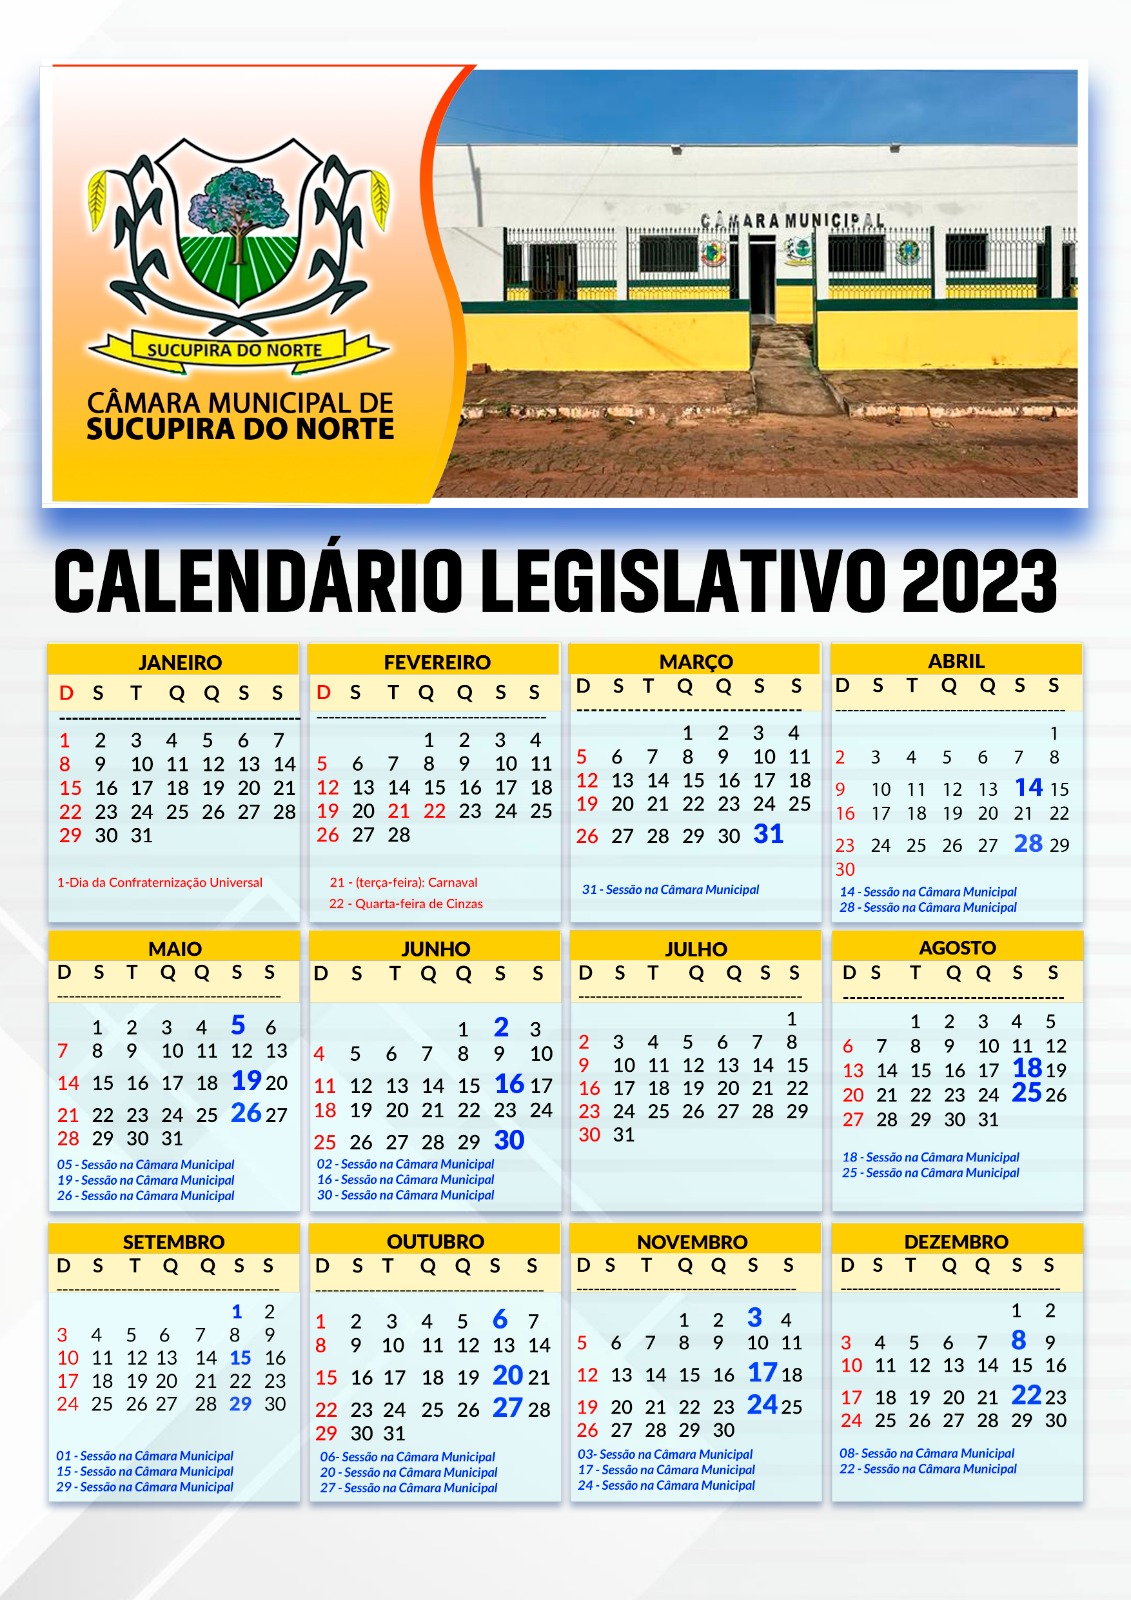 Calendário legislativo 2023